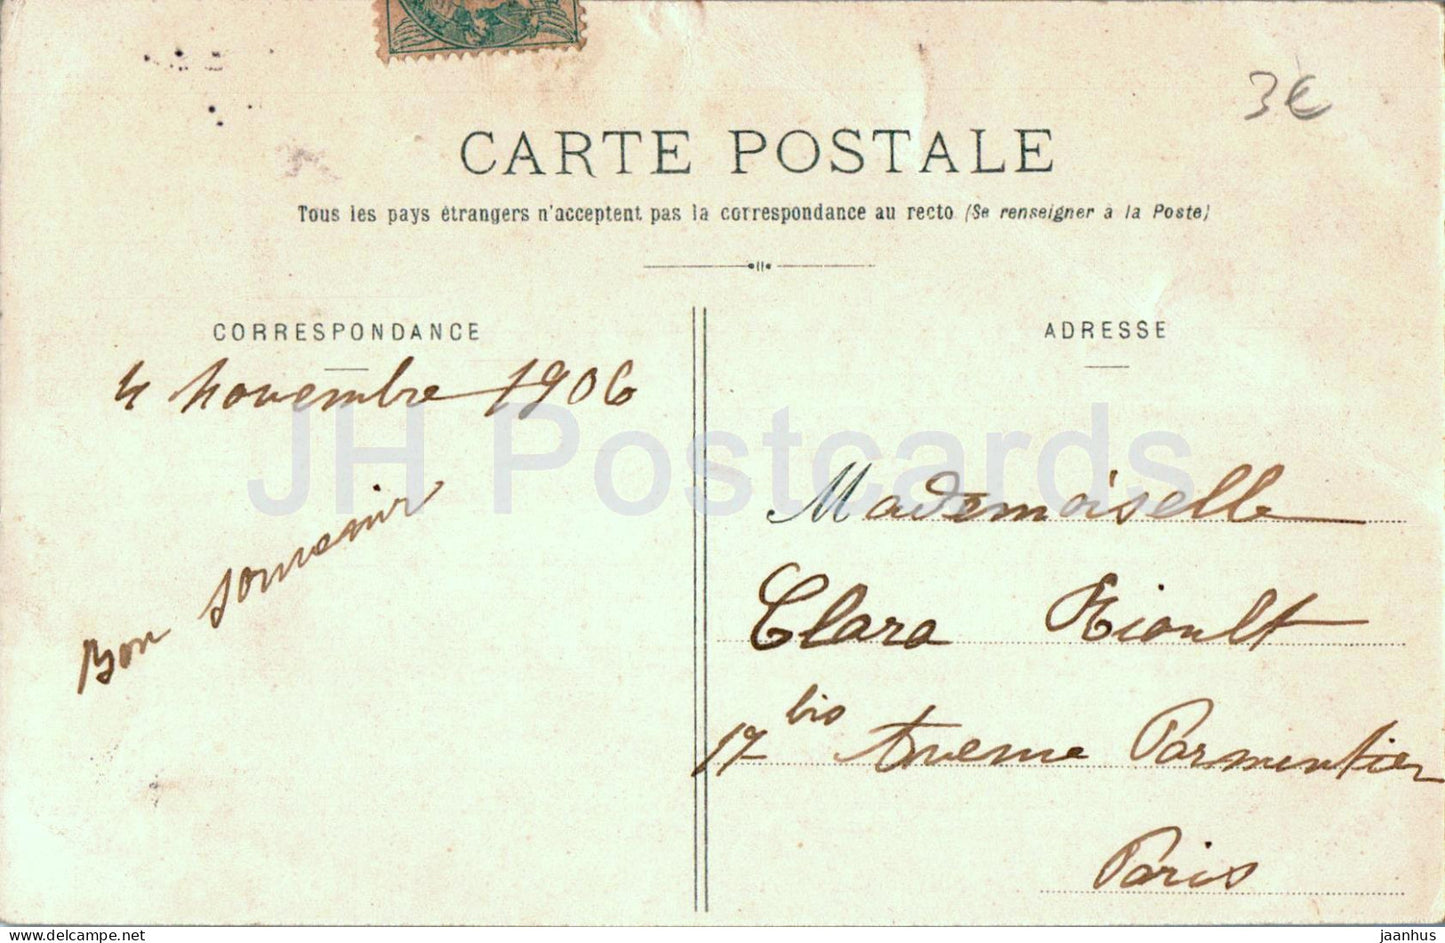 Ferrieres - Vieux Pont du XV siecle appele Gril de Corbelin - Brücke - alte Postkarte - 1906 - Frankreich - gebraucht 